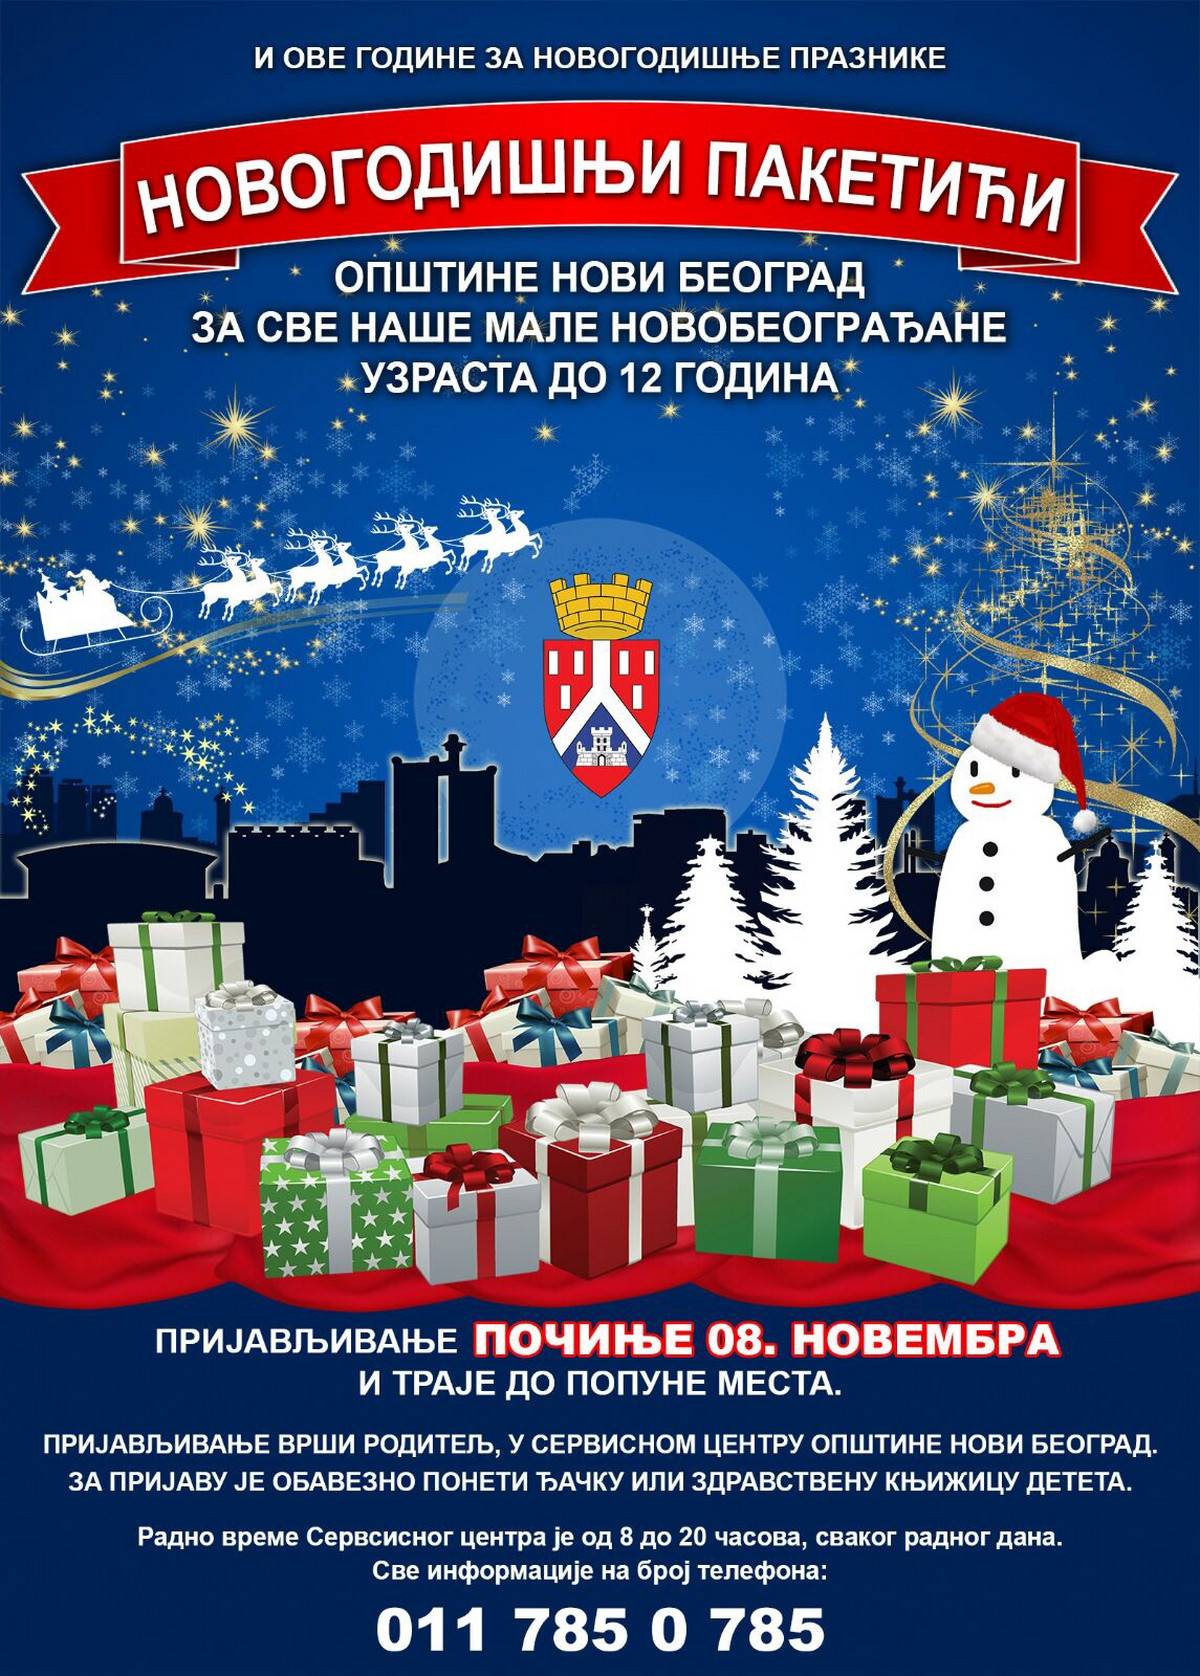 Besplatni novogodišnji paketići za decu sa Novog Beograda